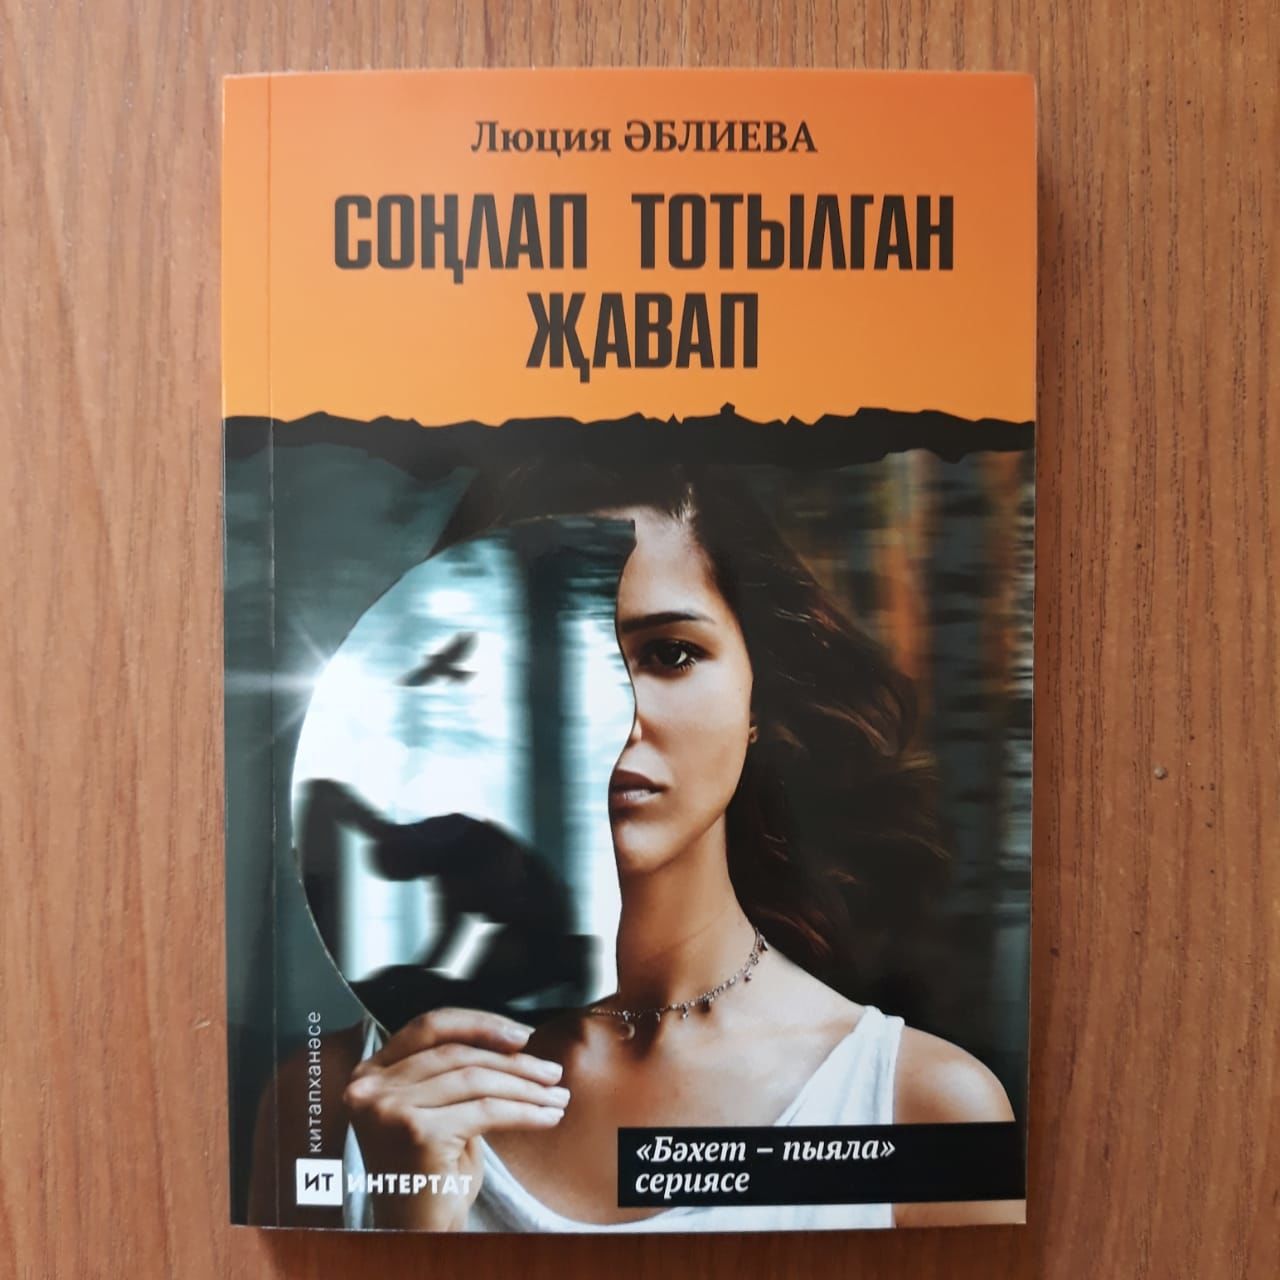 В редакции газеты «Сельская новь» можно приобрести книги на татарском языке